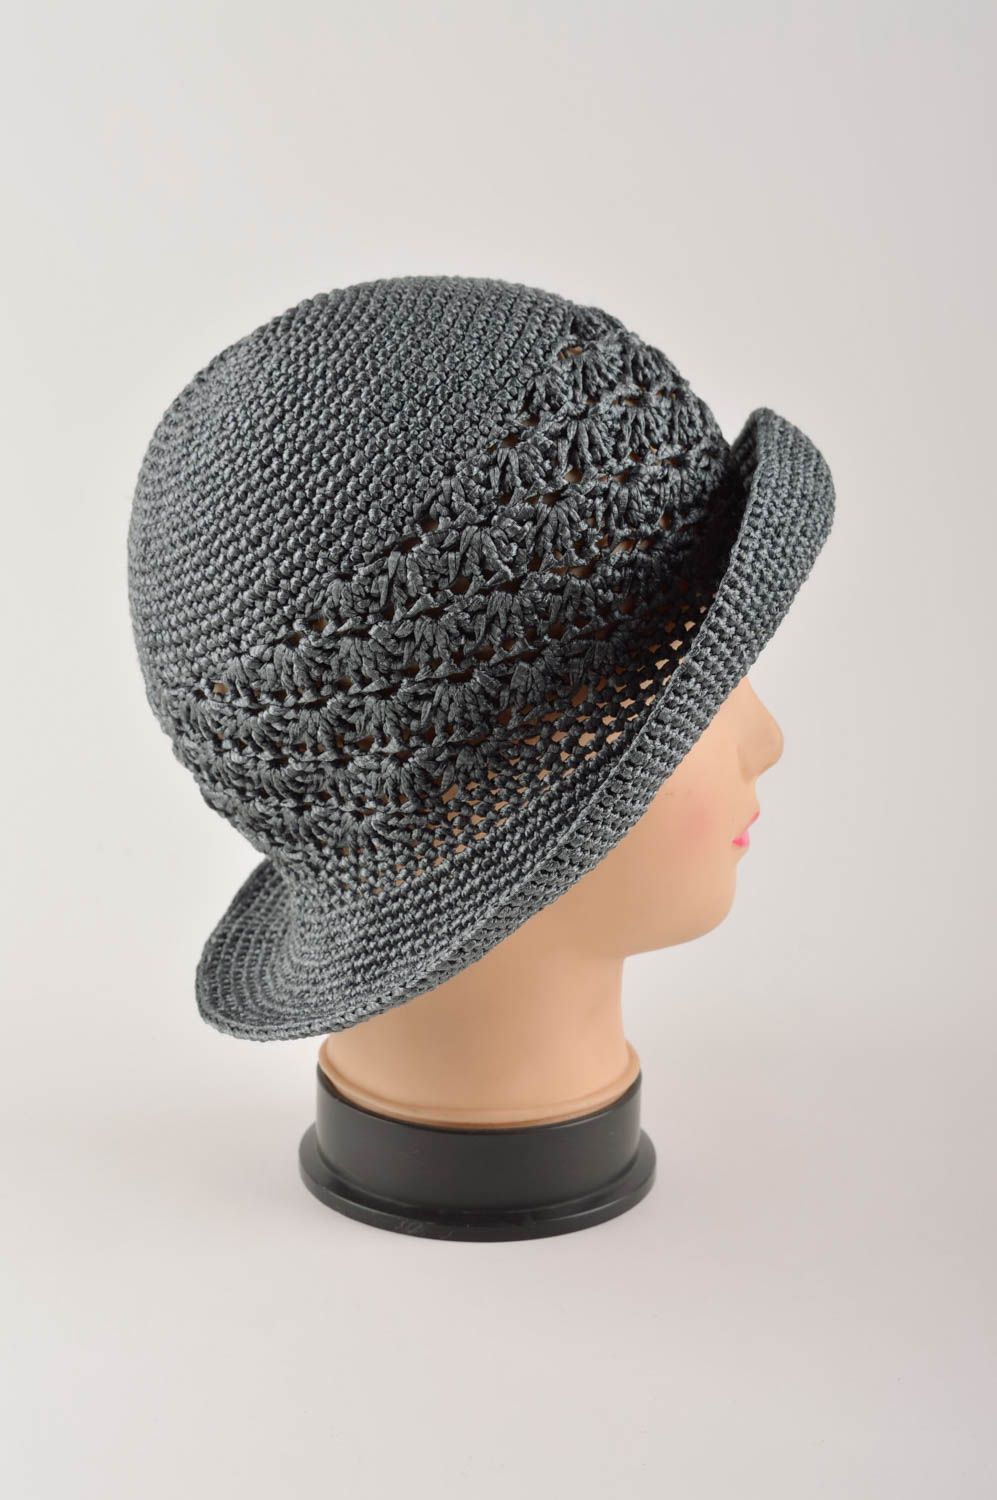 Handmade gehäkelter Hut Designer Accessoire Hut für Damen schöner Hut grau foto 4